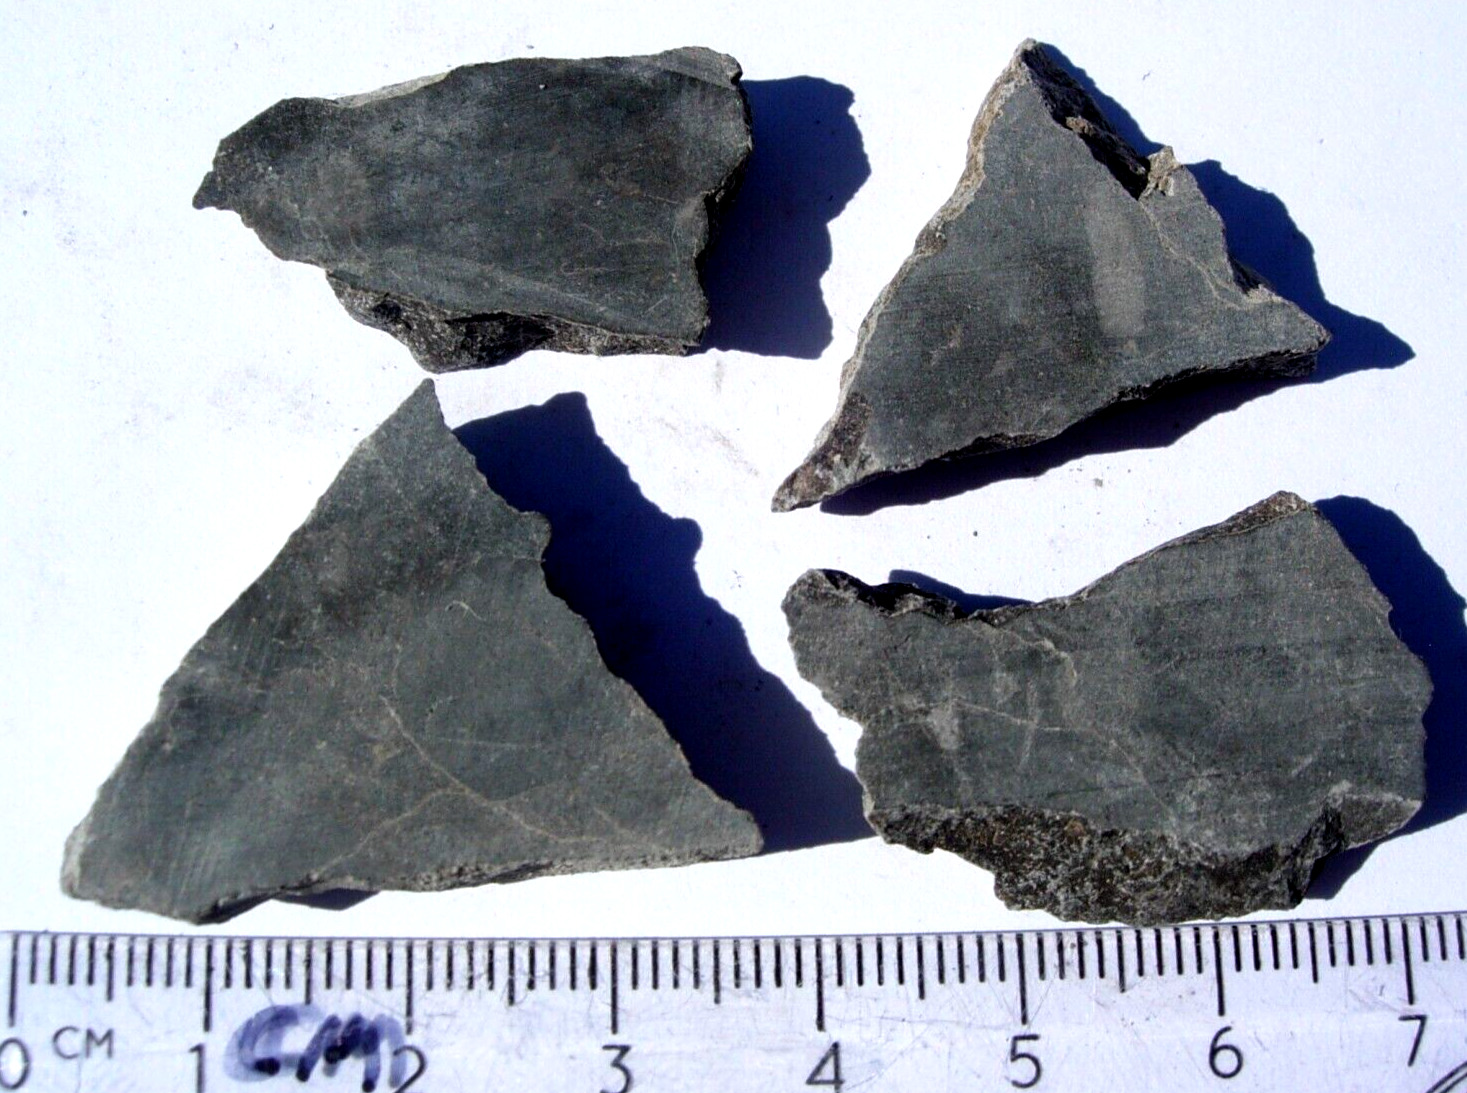 all 19.2 grams Alamo meteorite Impact Breccia from Nevada - unpolished slices